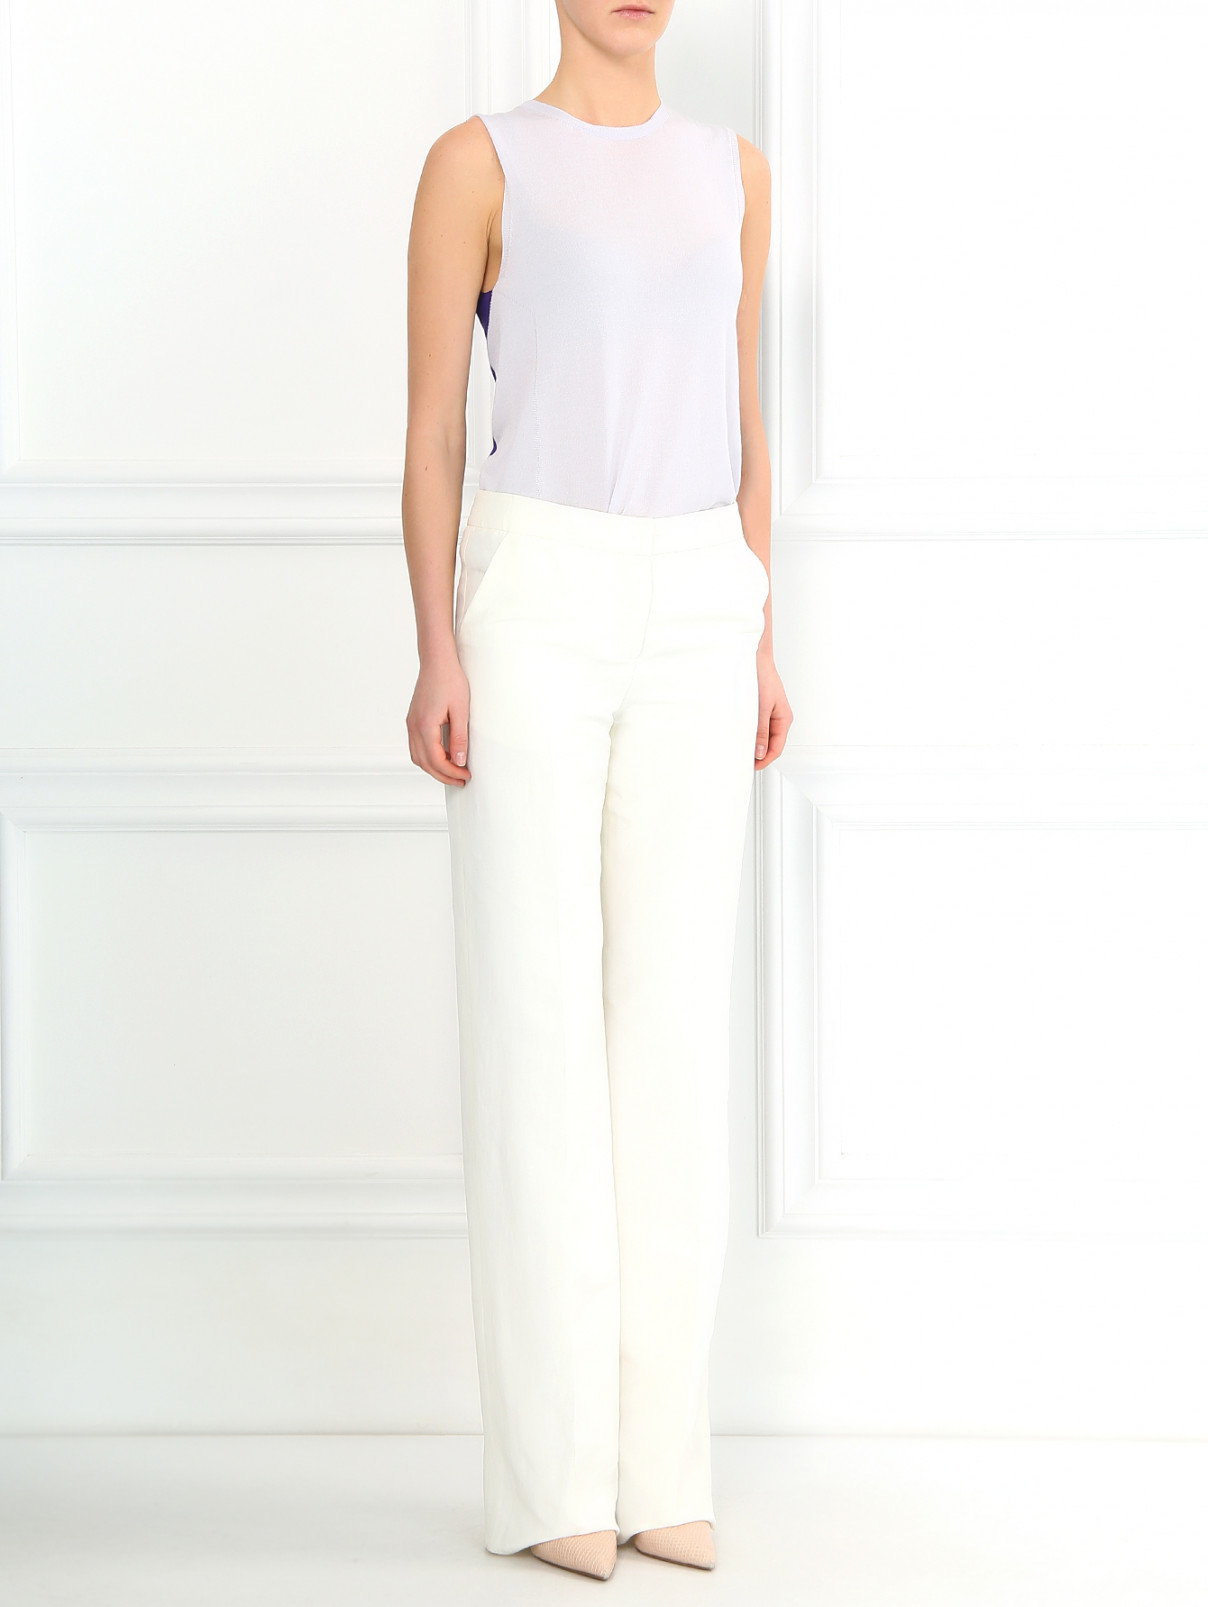 Свободные брюки из льна и шелка Armani Collezioni  –  Модель Общий вид  – Цвет:  Белый